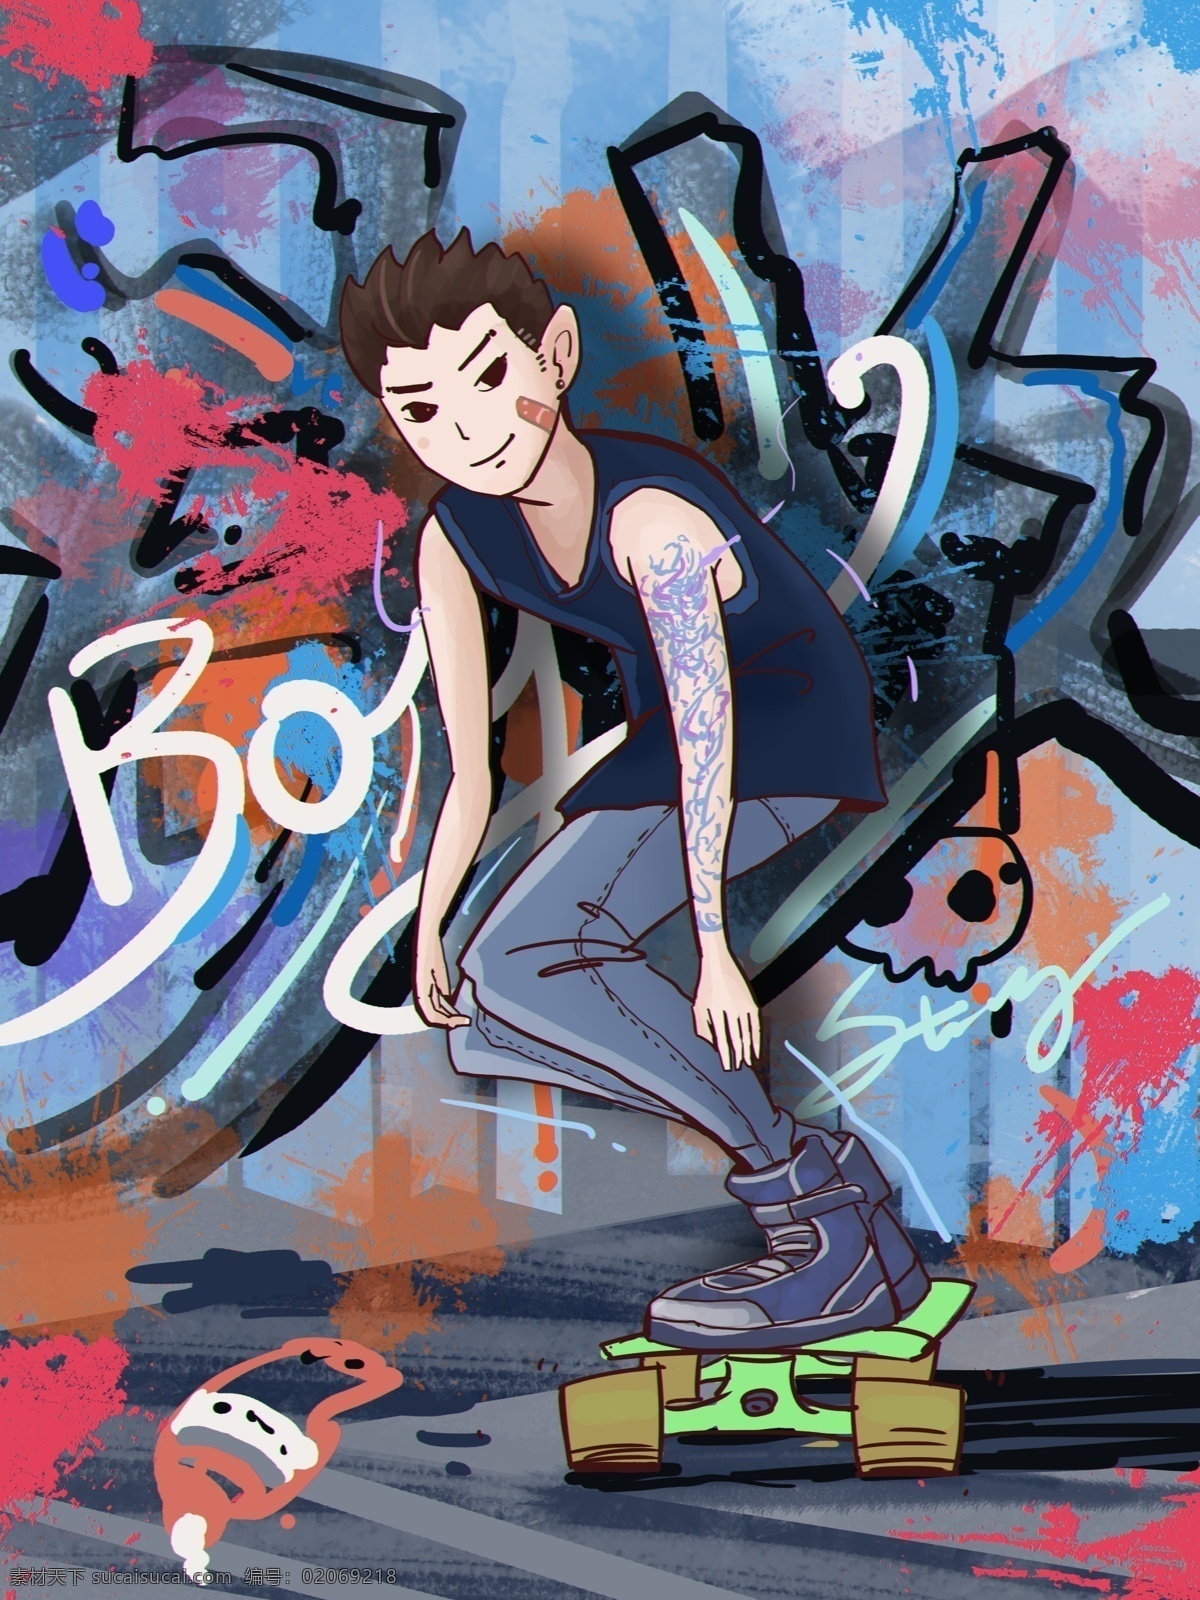 世界 滑板 日 少年 滑板日 世界滑板日 滑行 滑手 轮滑 滑板男孩 涂鸦 街头涂鸦